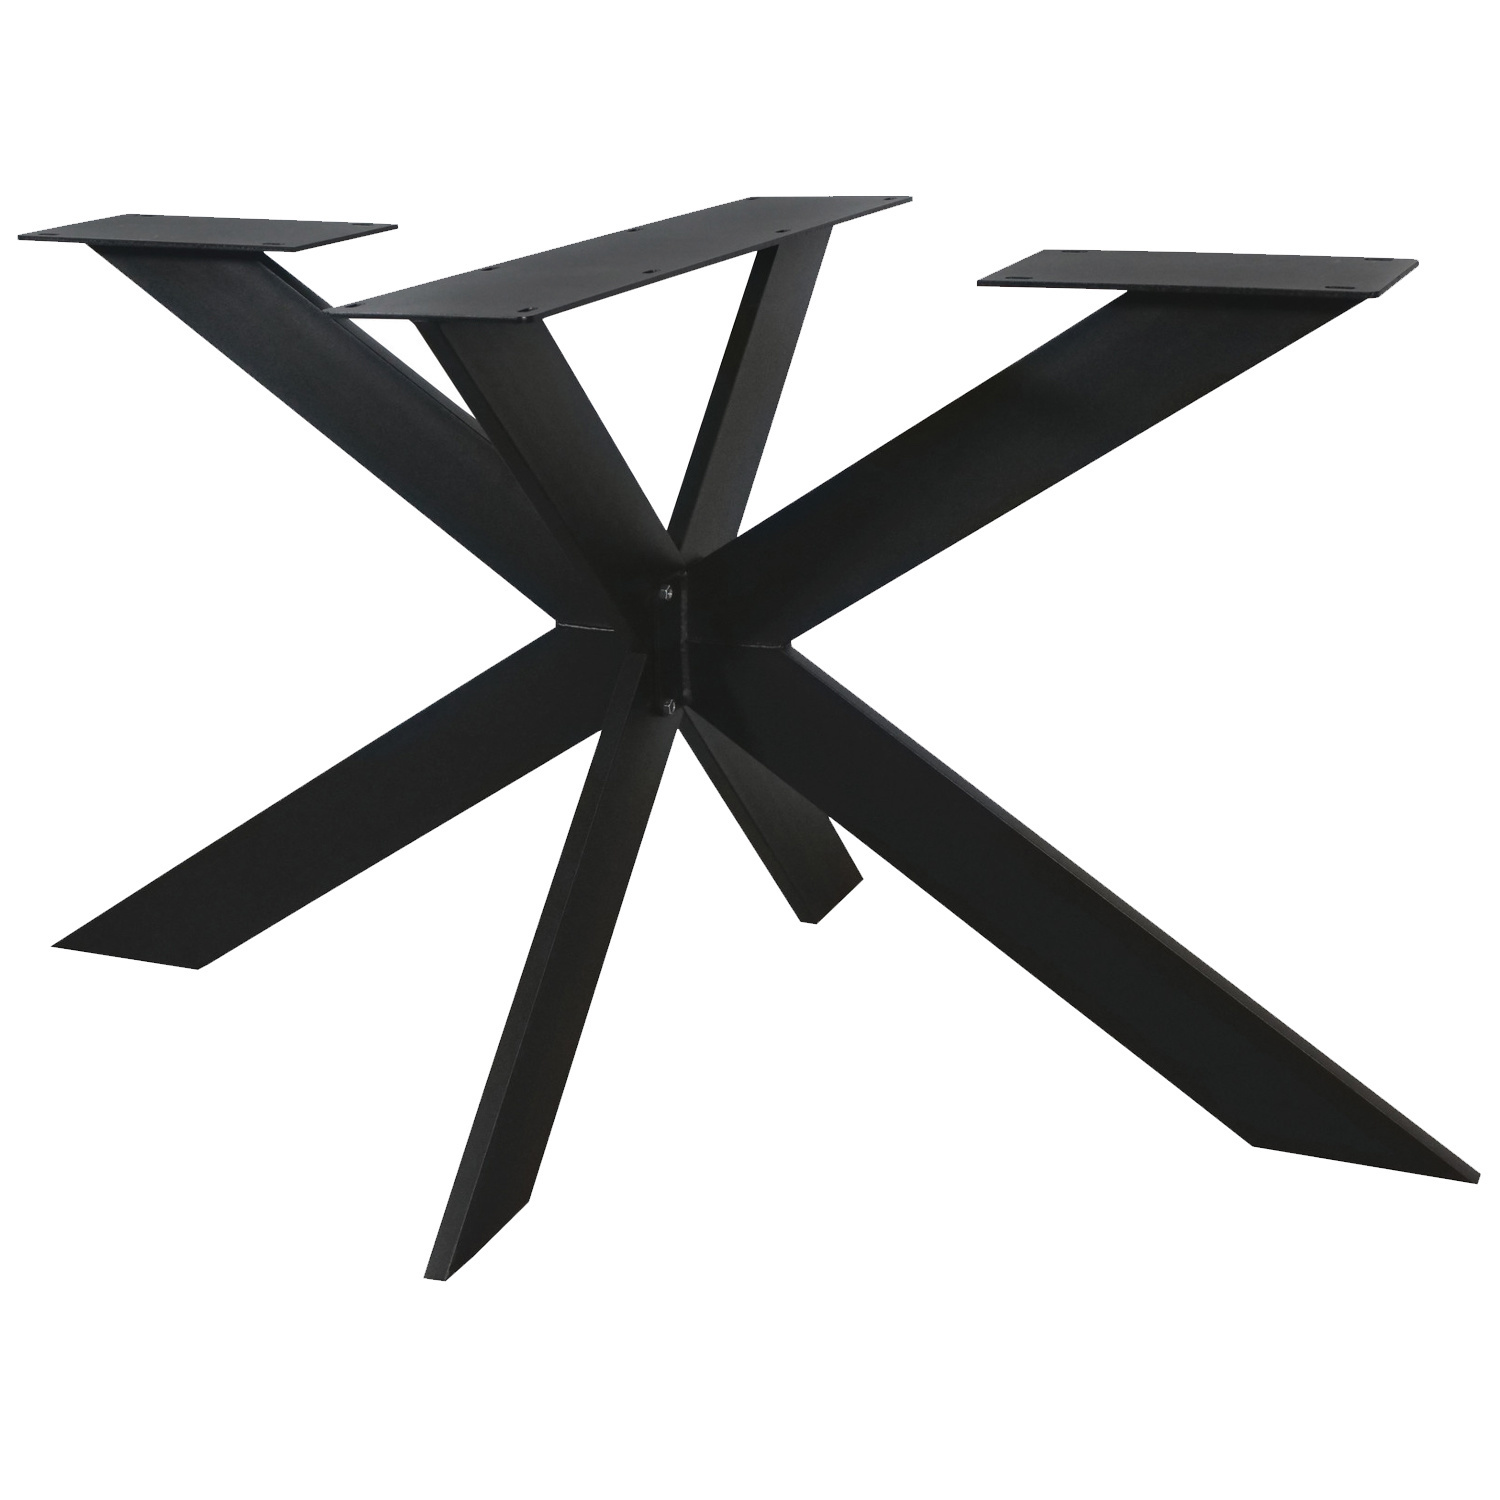  Tischgestell Metall Spider exclusiv- 3-Teilig - 3x15 cm - 90x140 cm - 72,5 cm hoch - Stahl Tischuntergestell / Mittelfuß Rechteck & oval - Beschichtet - Schwarz